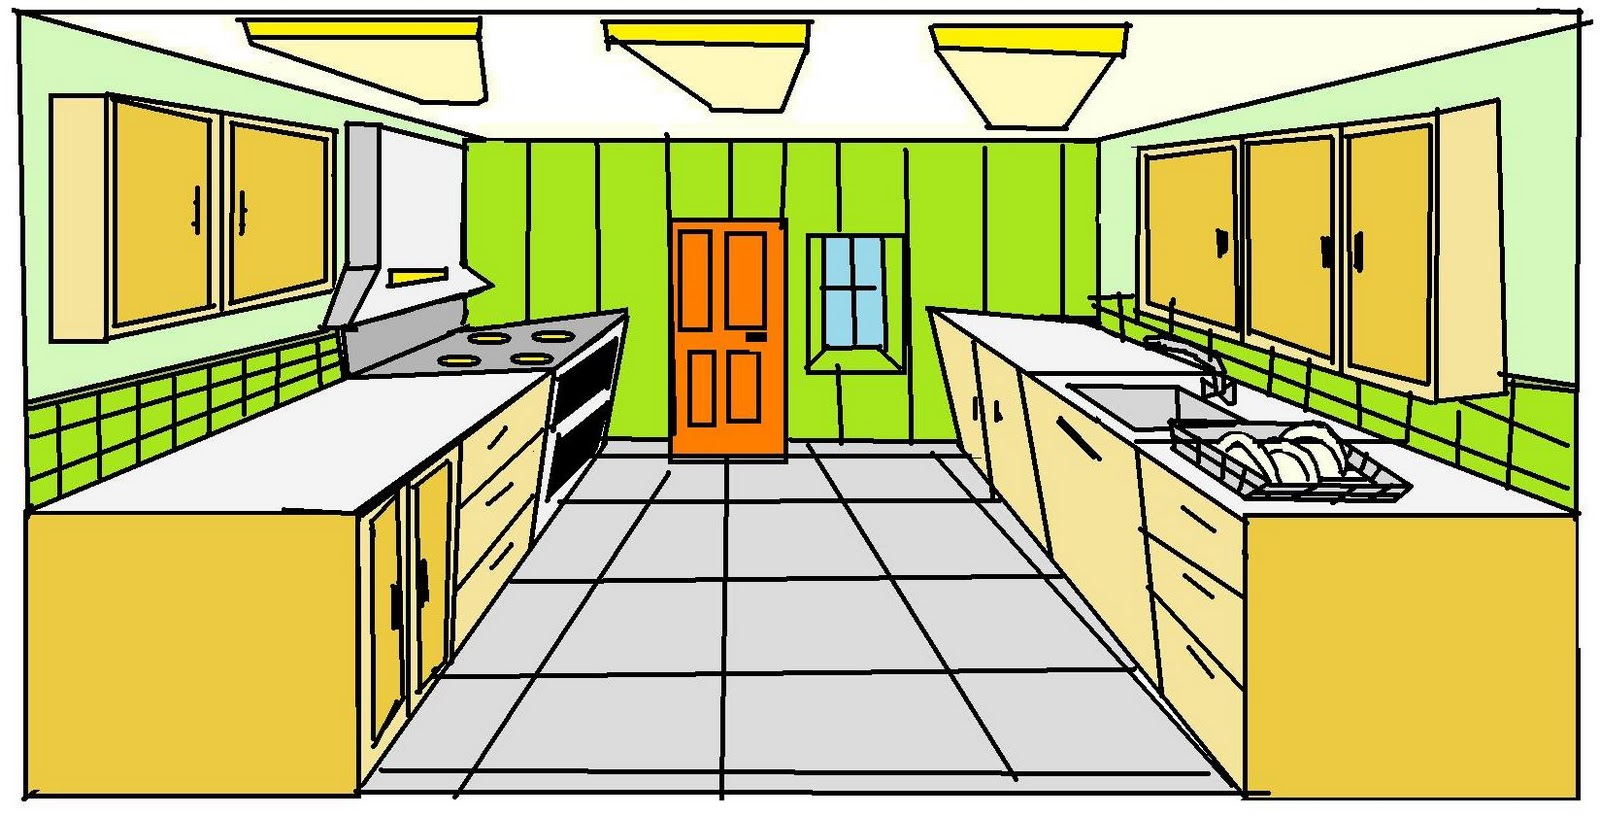 Animated Kitchen